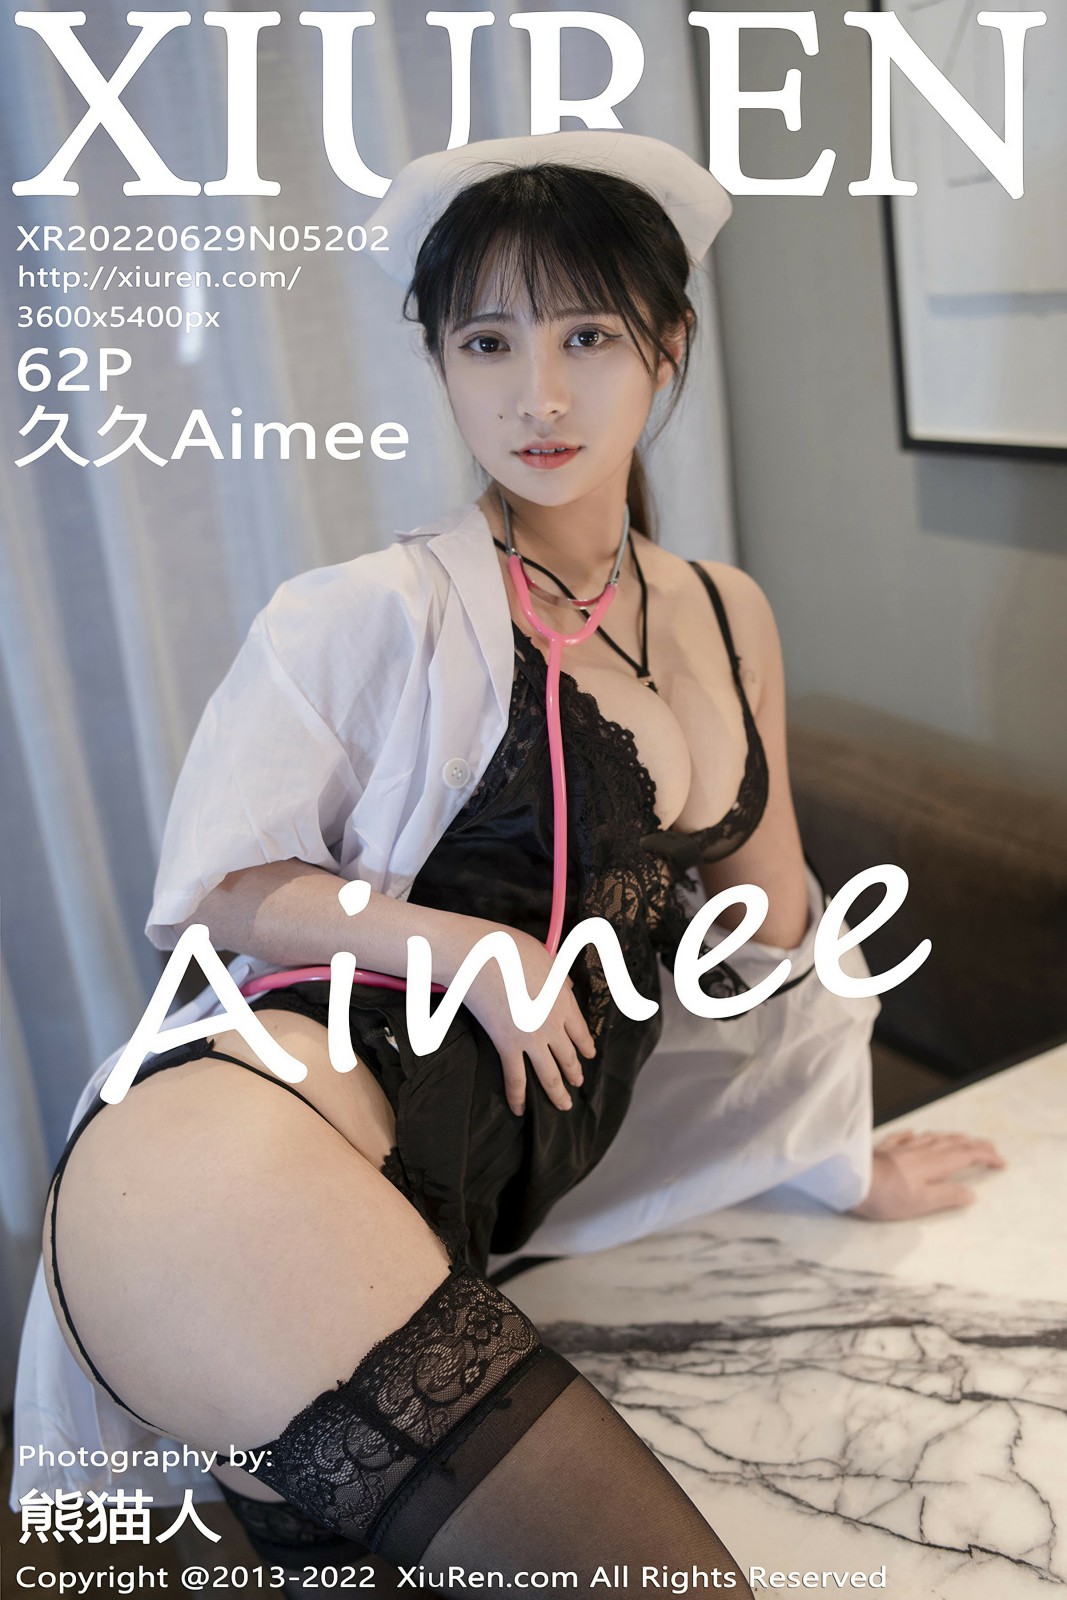 [XiuRen秀人网] 2022.06.29 No.5202 久久Aimee [62+1P]